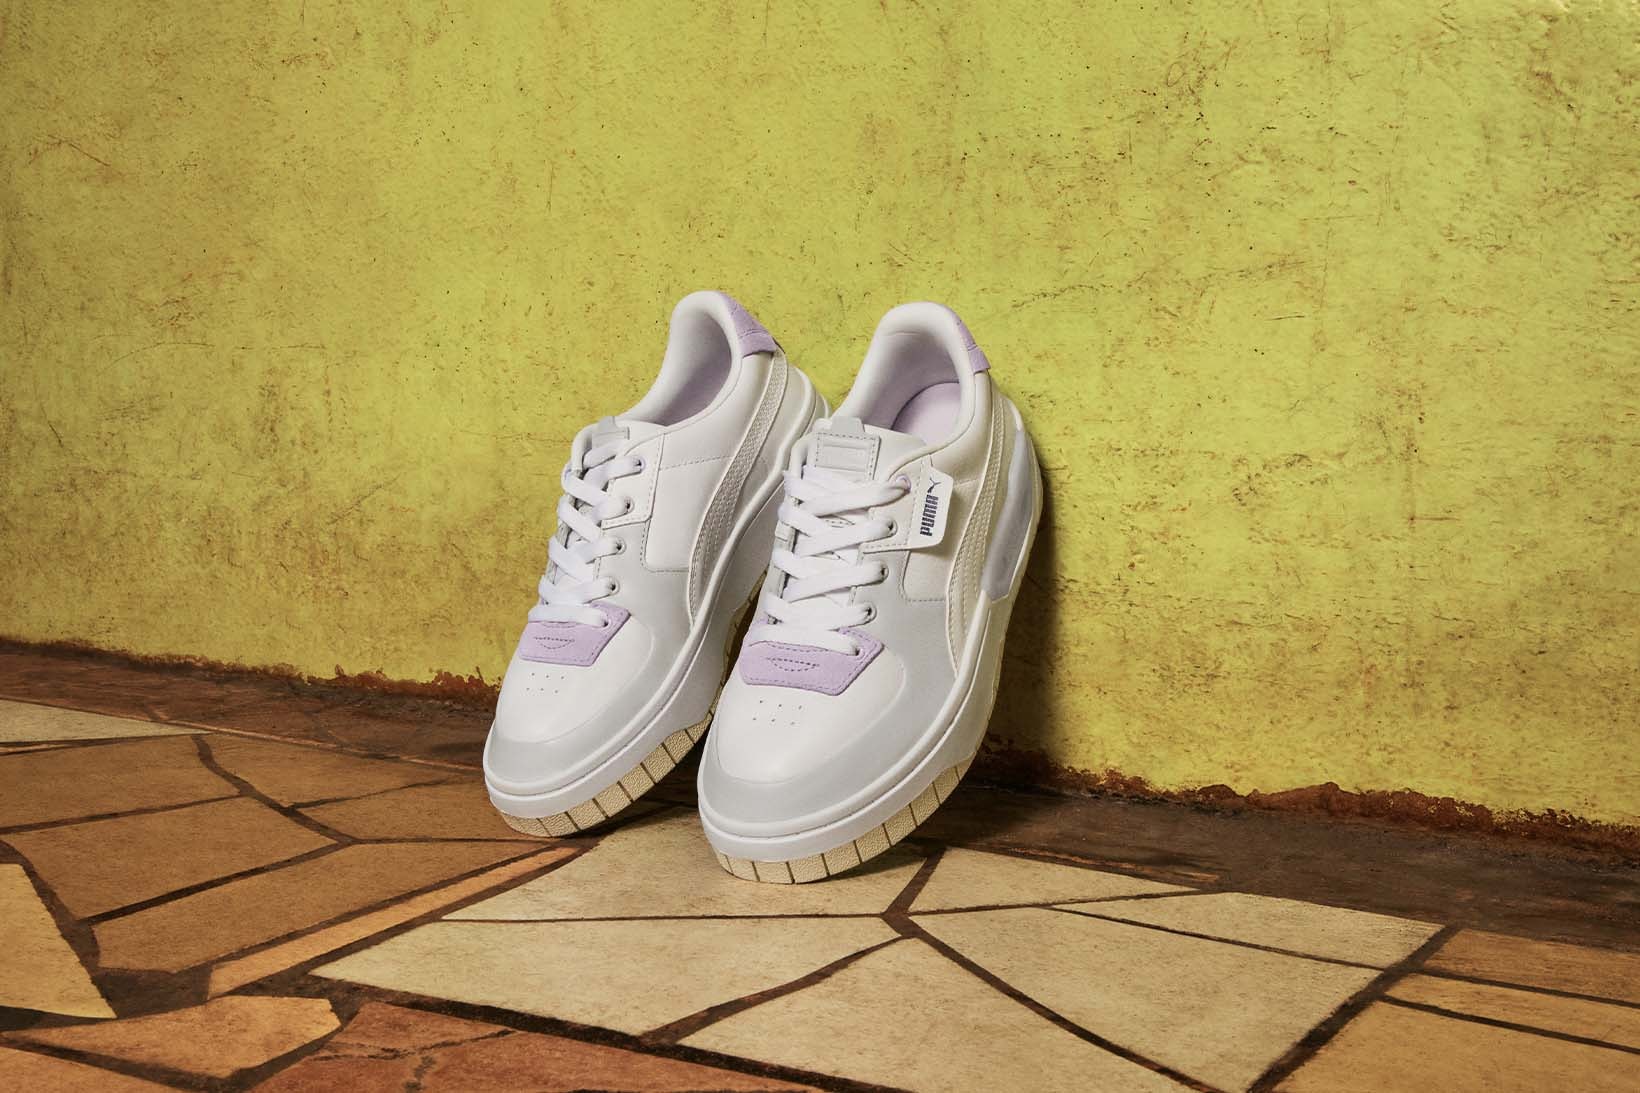 Puma Winnie Harlow Cali Dream Women's Sneaker White Lavender Grey Jamaica Campaign Release Date